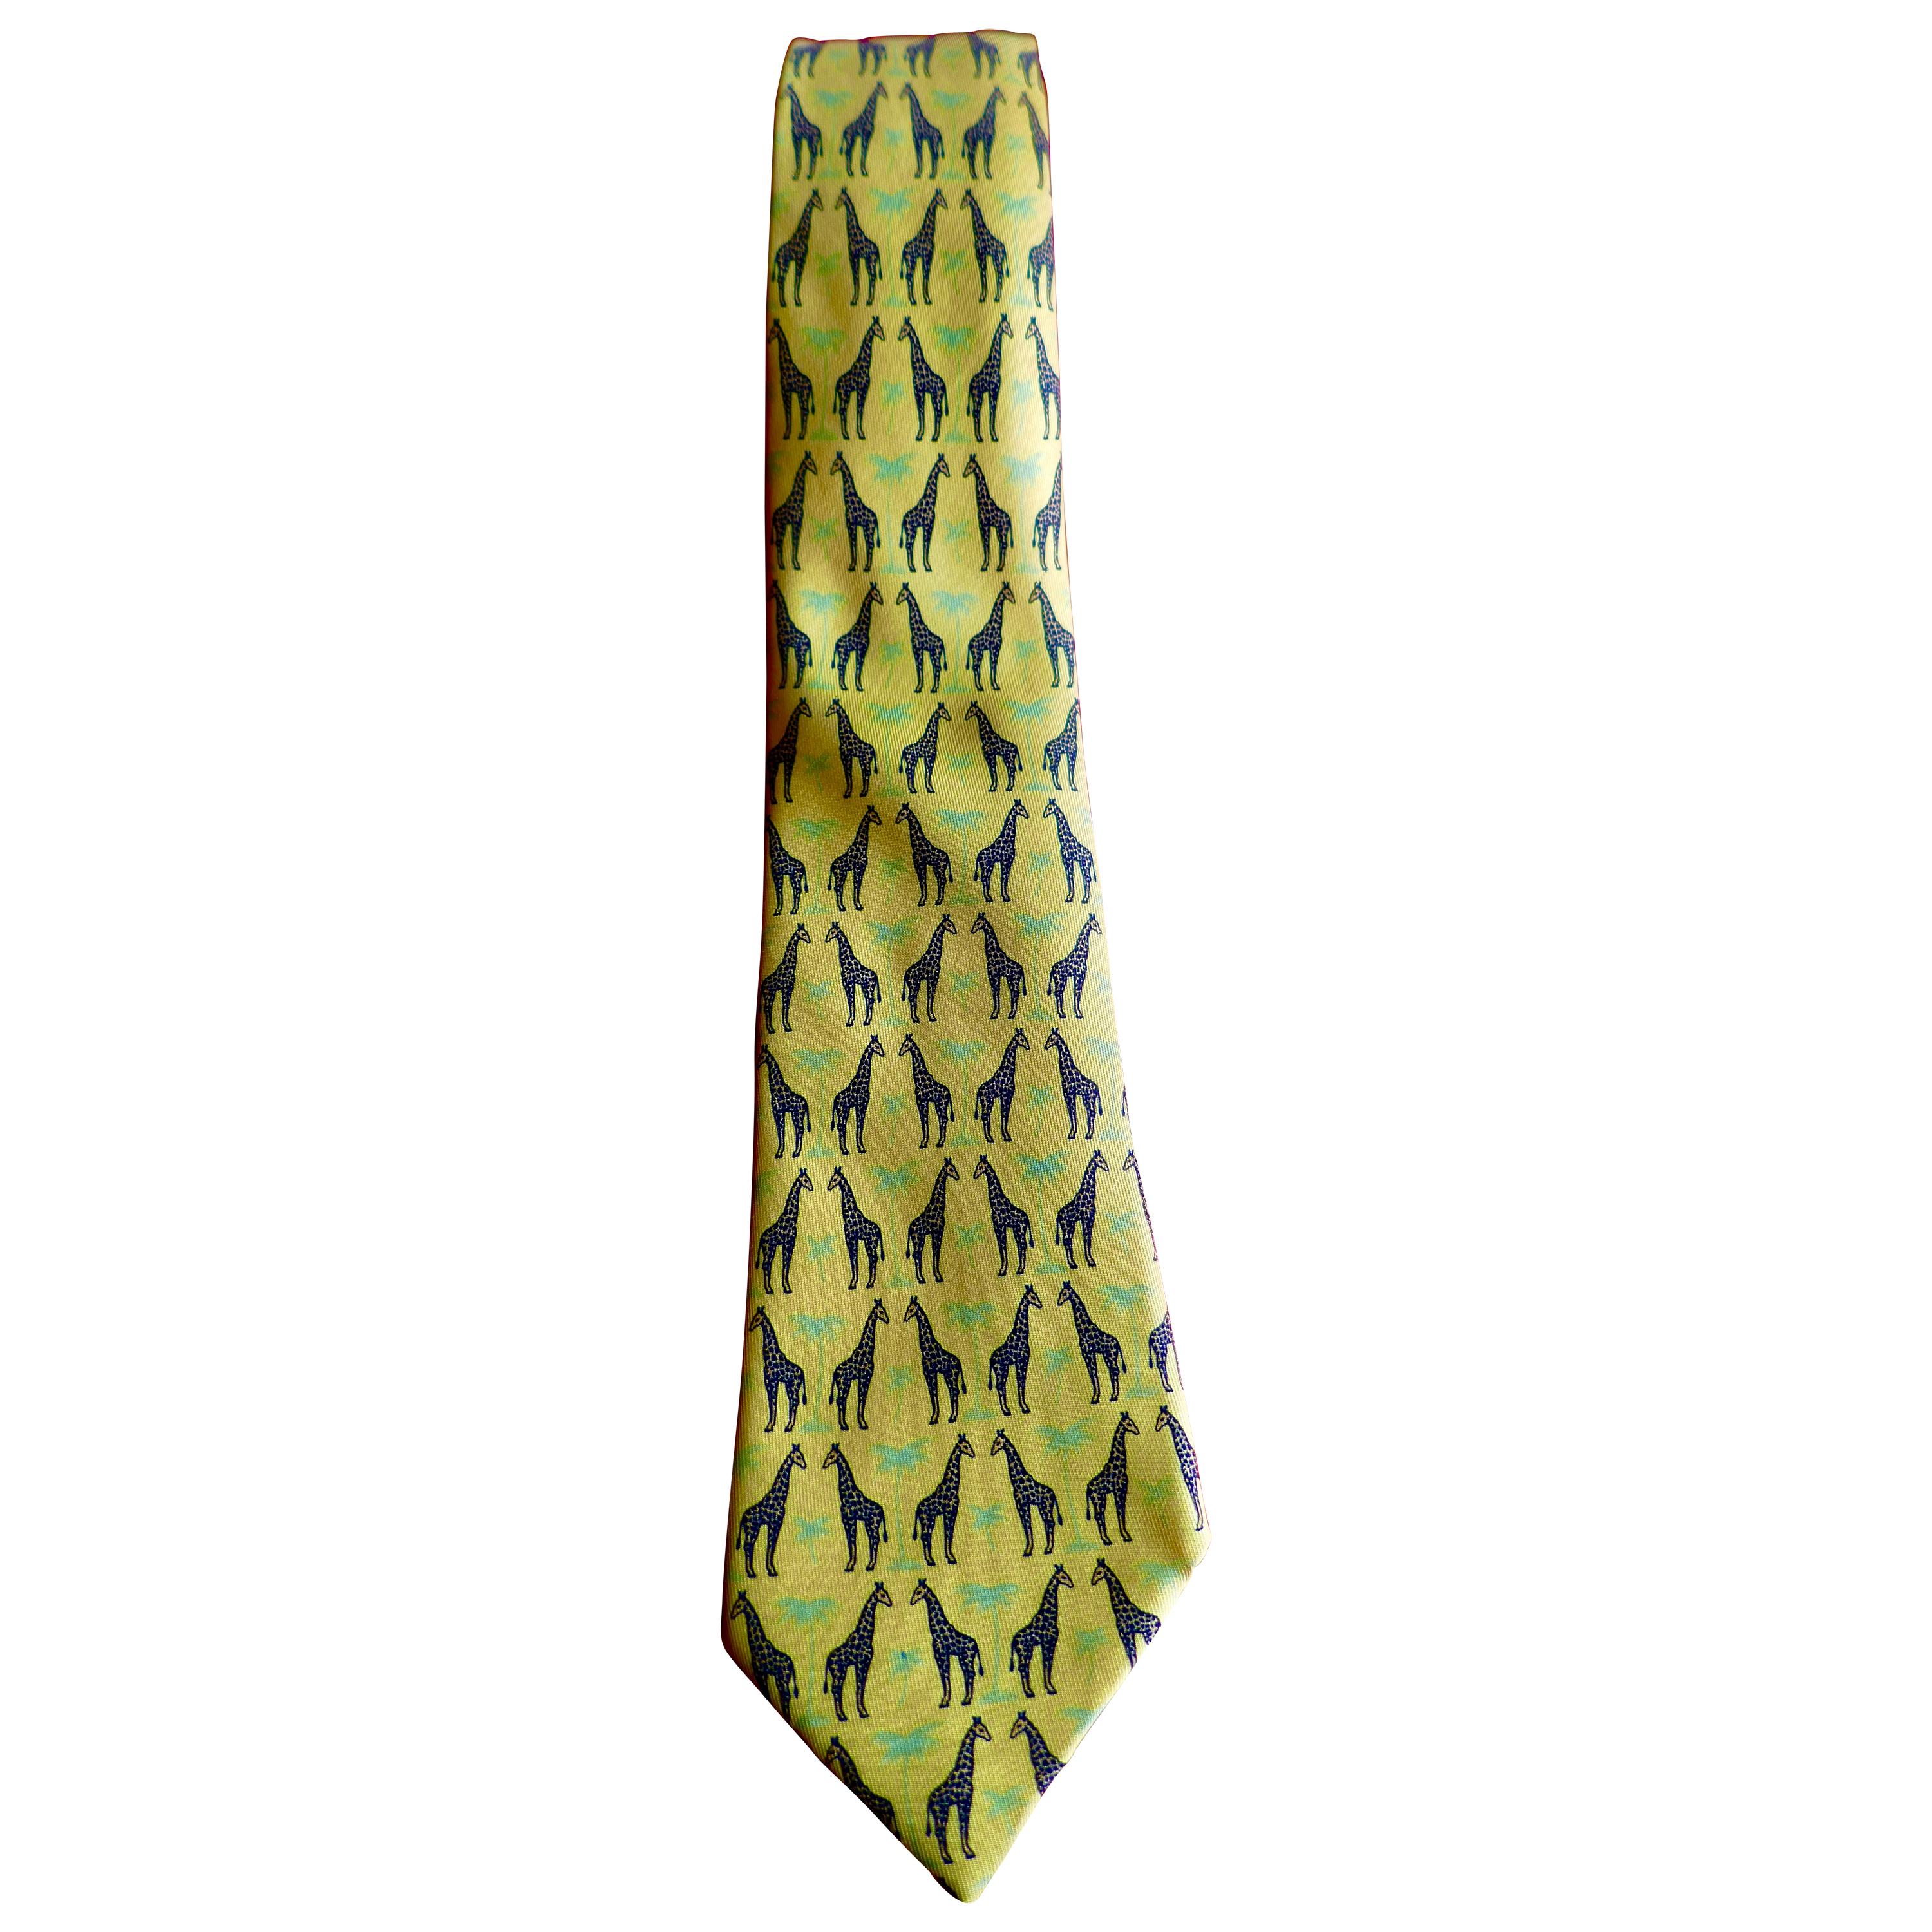 Rare Hermes Novelty Silk Tie, Giraffe Face Off, Hermes Sunflower Pallet 